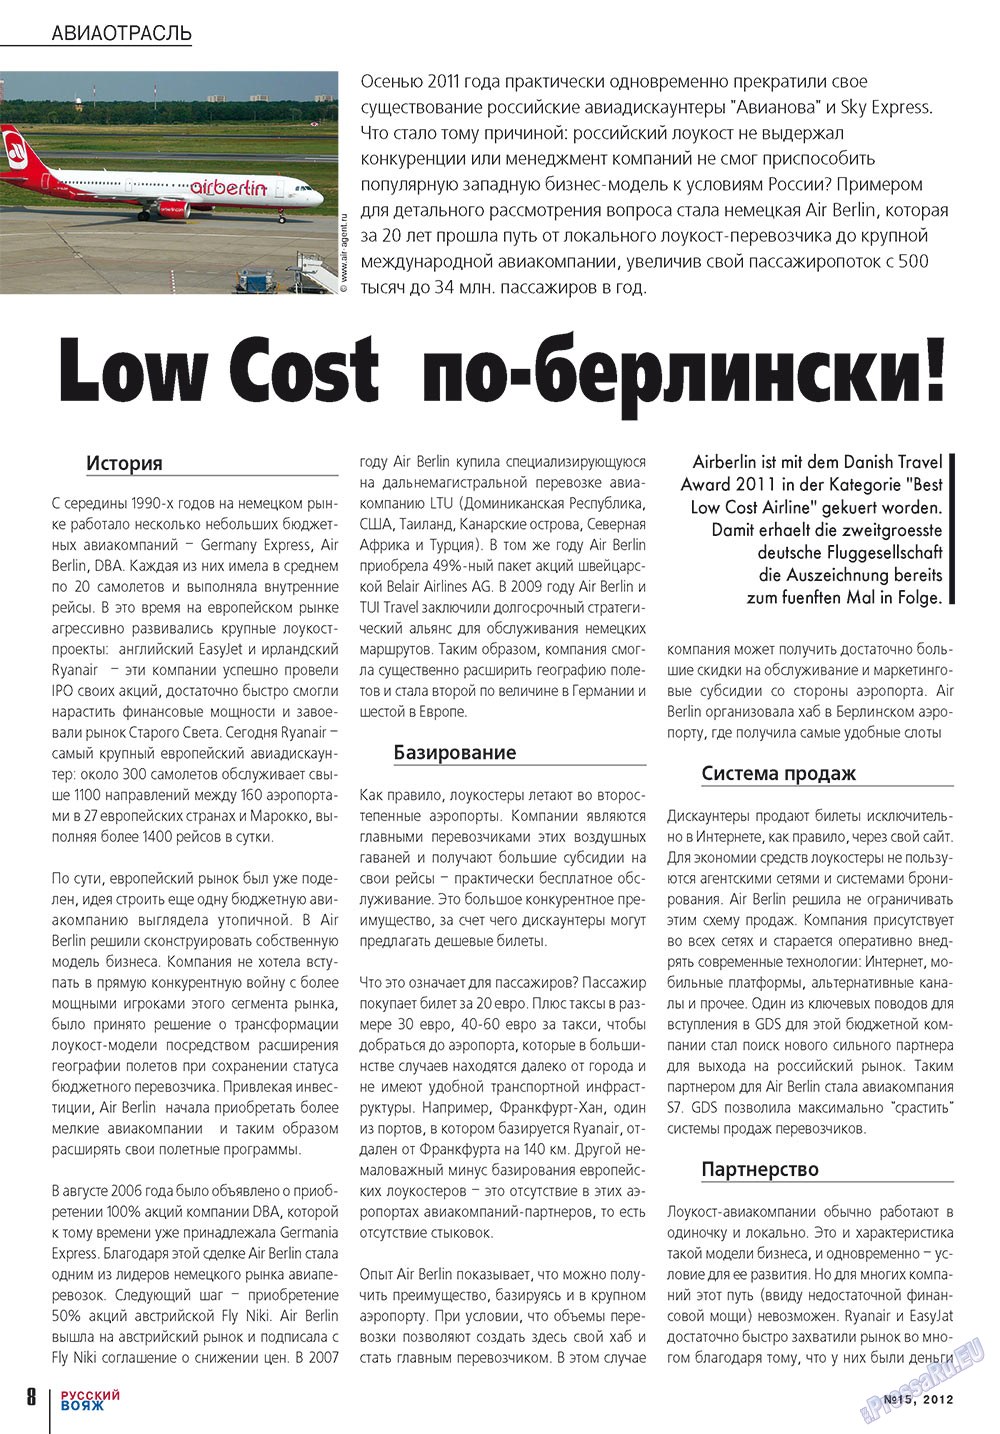 Русский вояж (журнал). 2012 год, номер 15, стр. 8